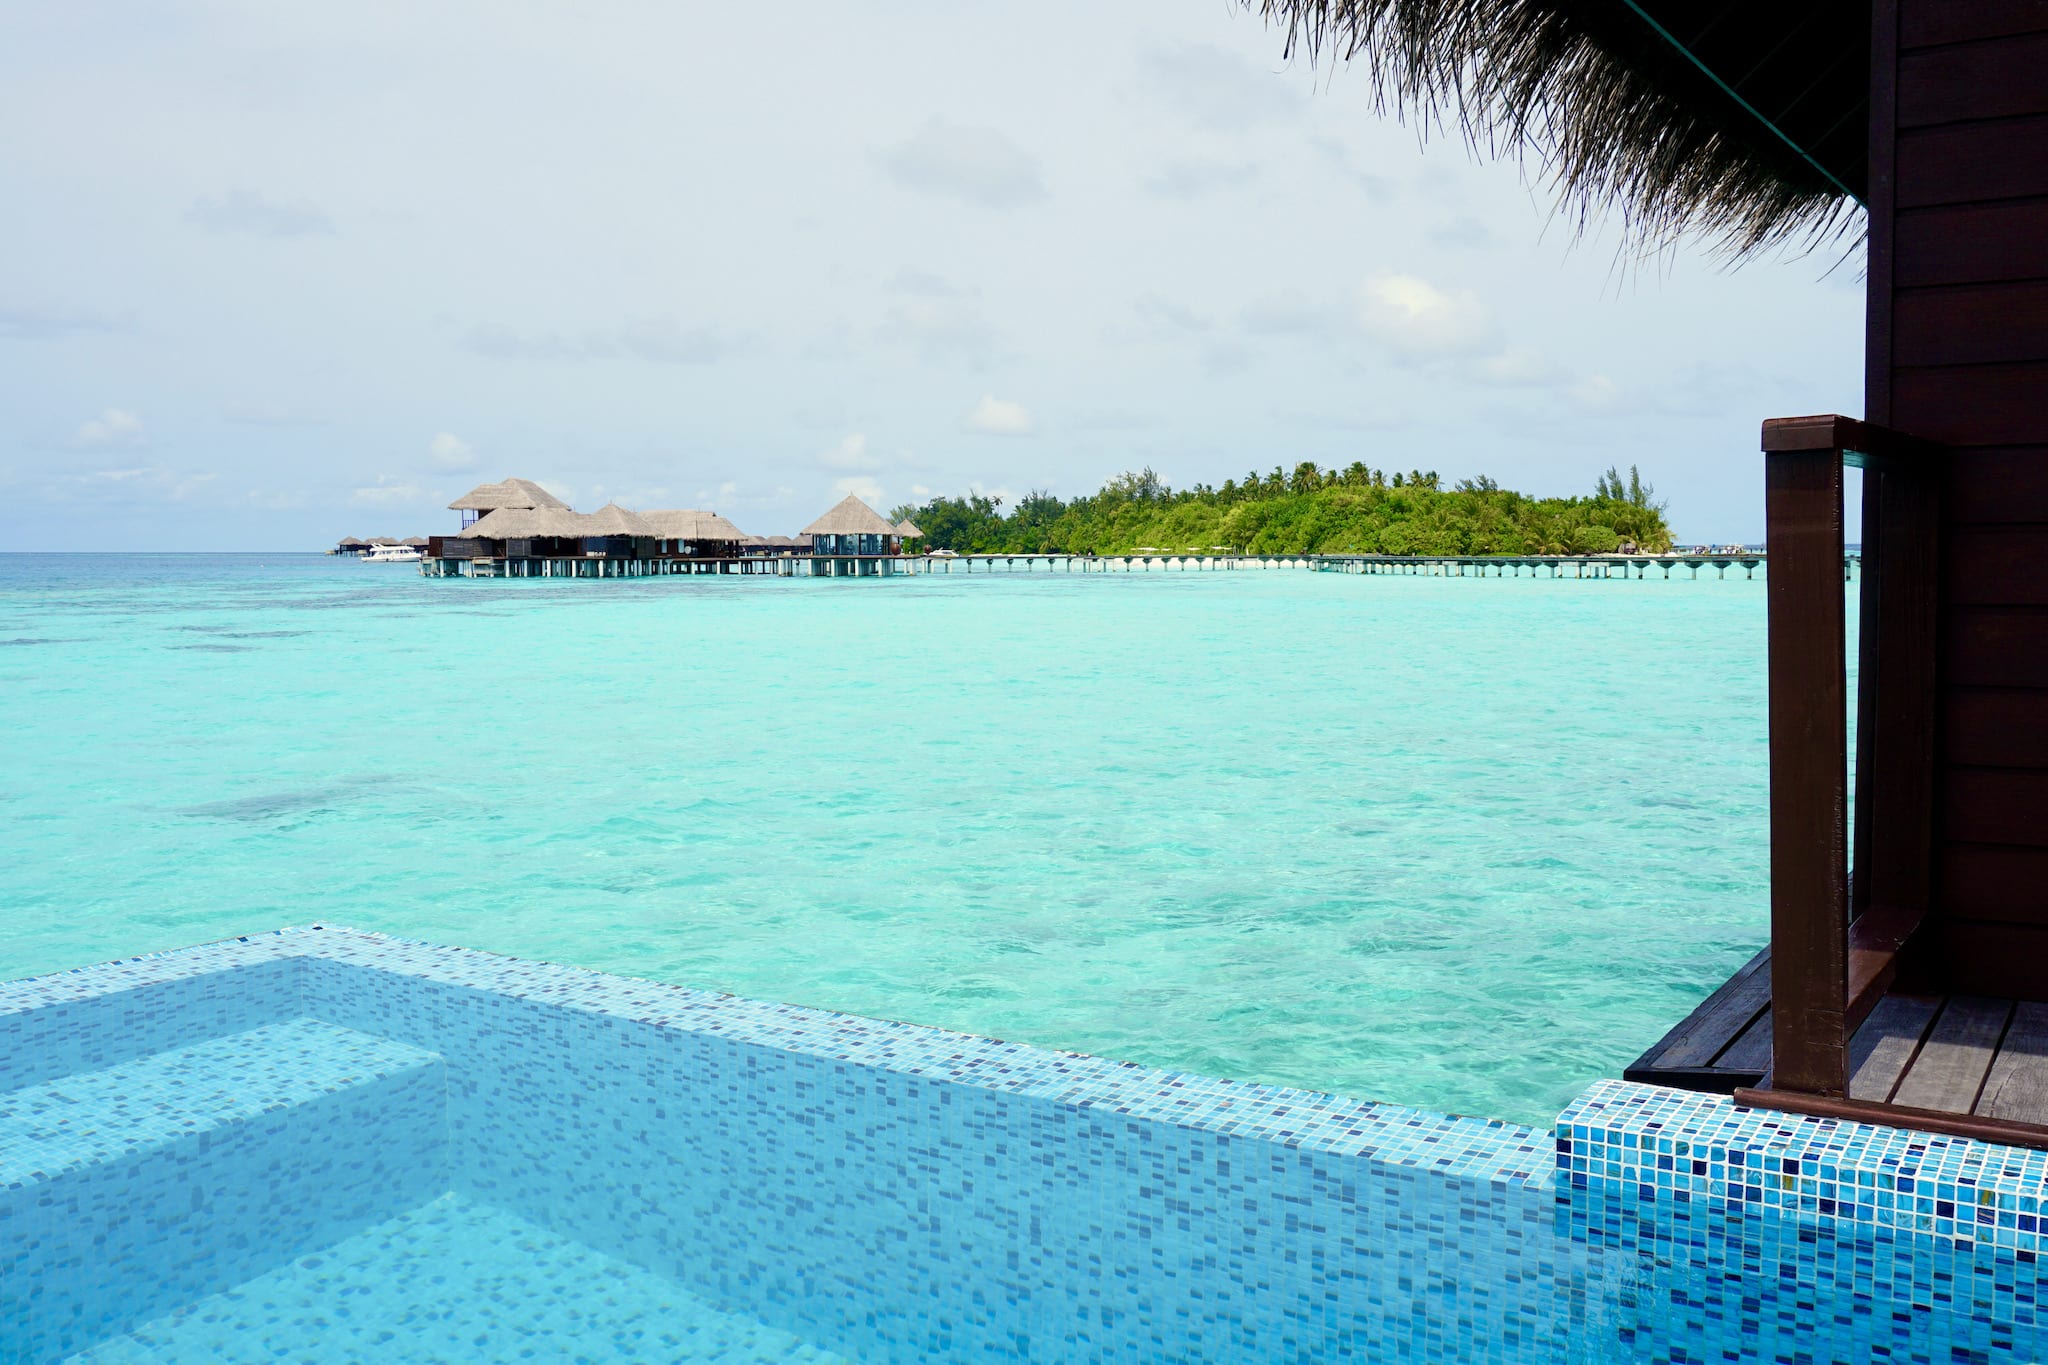 Willkommen auf den Malediven: Wer nach der langen Anreise morgens diesen Ausblick hat, muss sich erst einmal die Augen reiben. Foto: Sascha Tegtmeyer Reisebericht Malediven Tipps